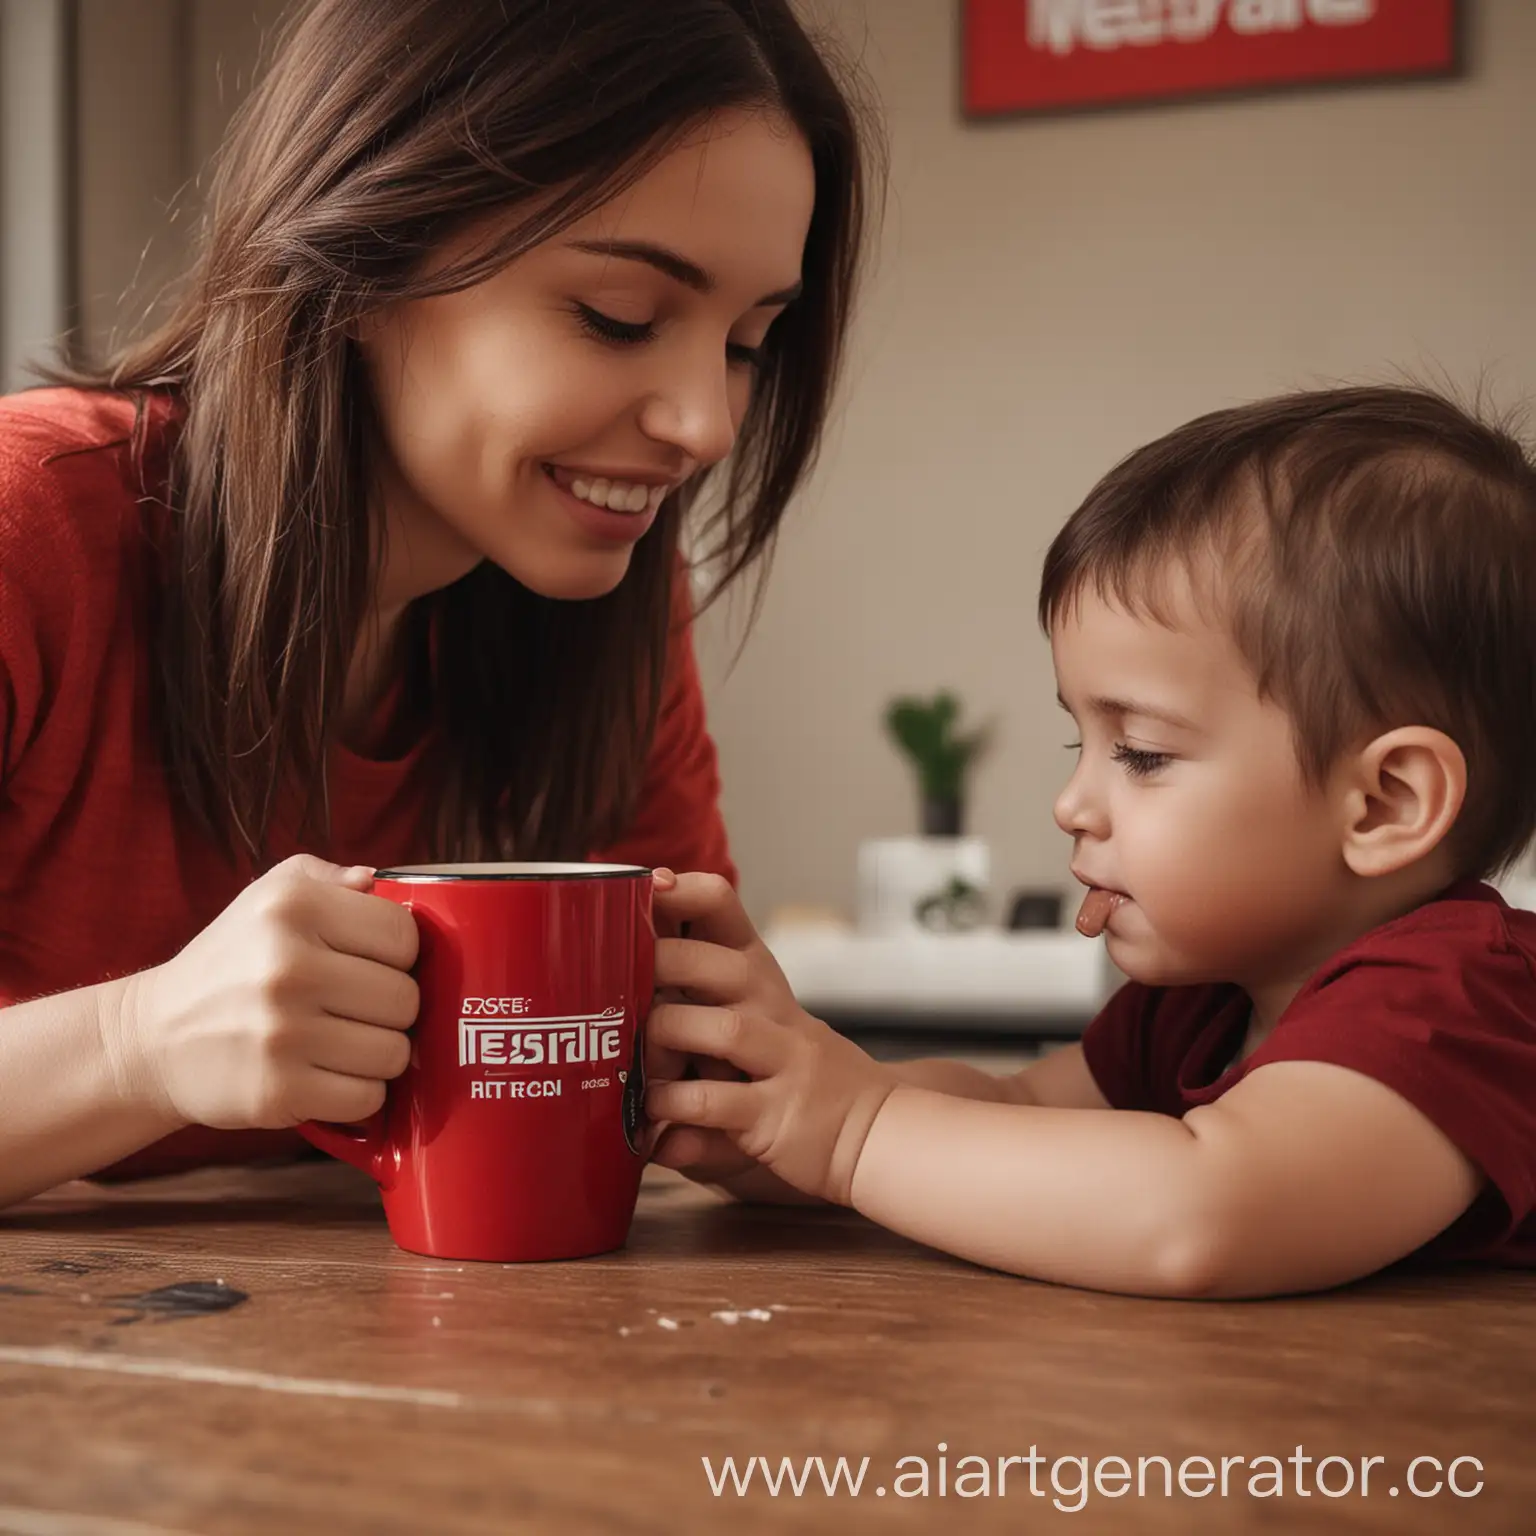 Молодая мама с чашкой Nescafe, играющая с ребенком, крупным планом, кружка 
красного цвета и черной надписью nescafe, крупный кадр, чтобы хорошо было видно надпись на кружке, в постельных оттенках
